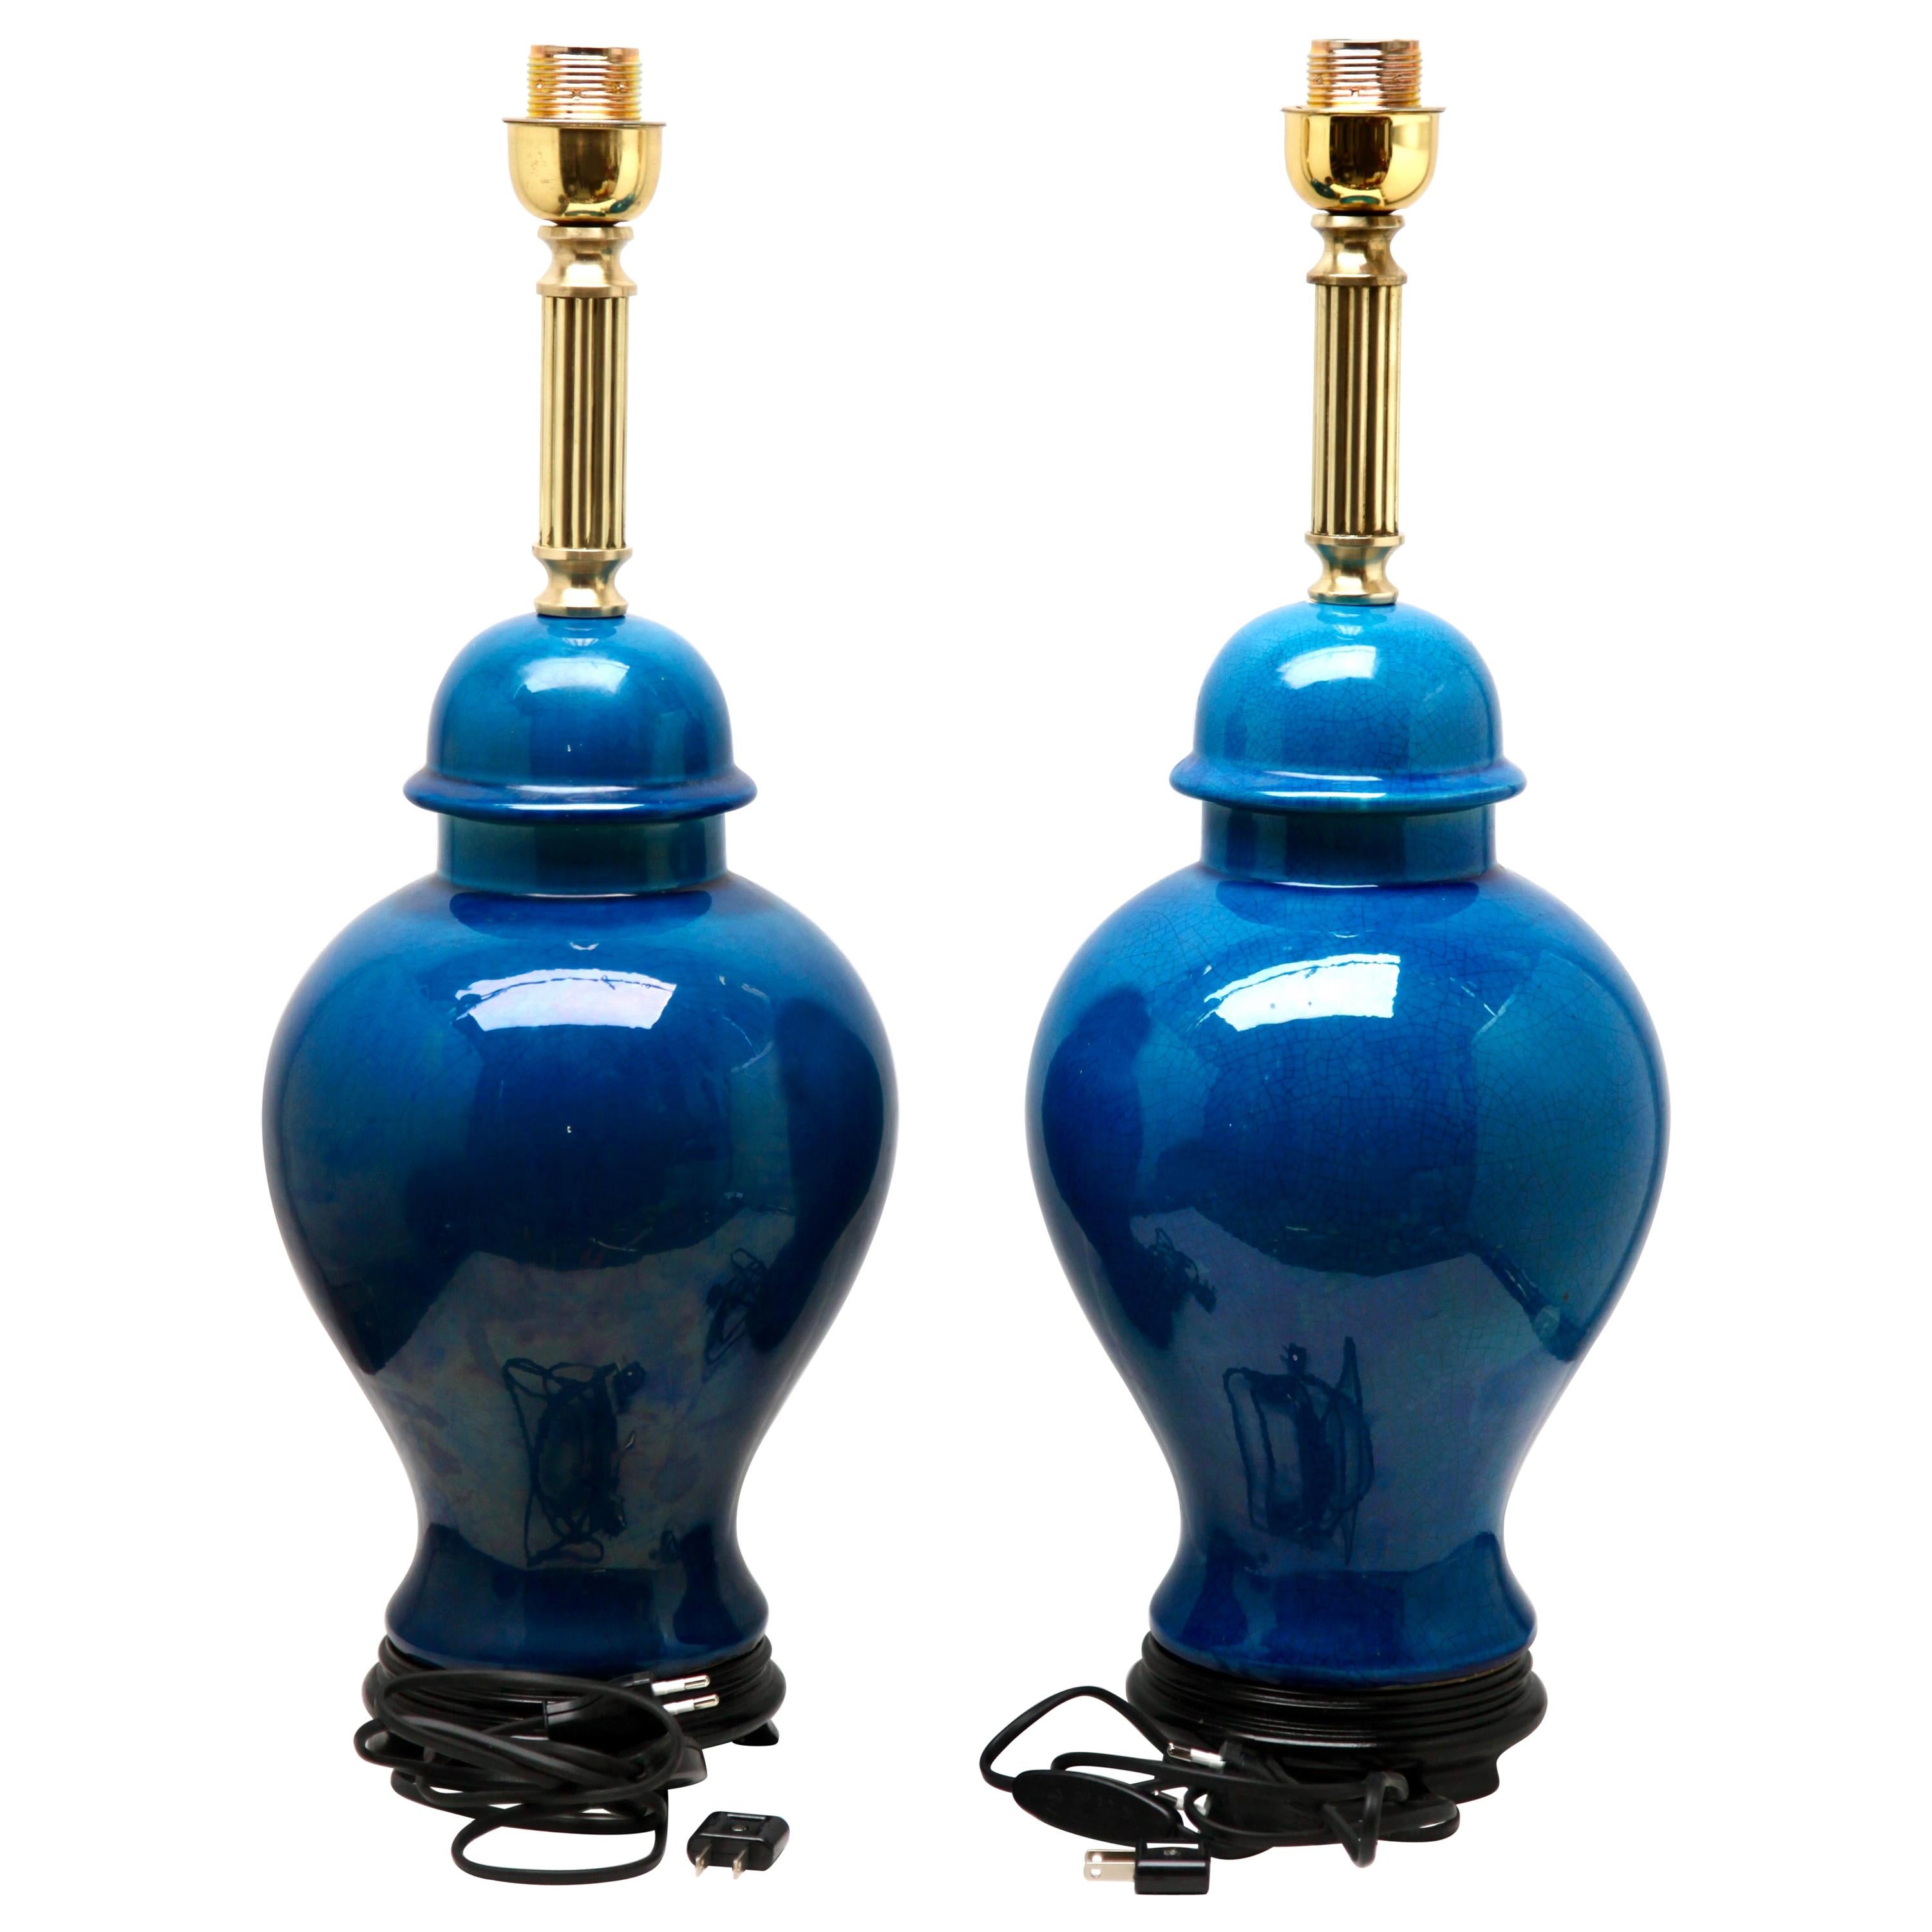 2 Turquoise Glazed Large Chinese Ceramic Table Lamp with Crackle Glaze